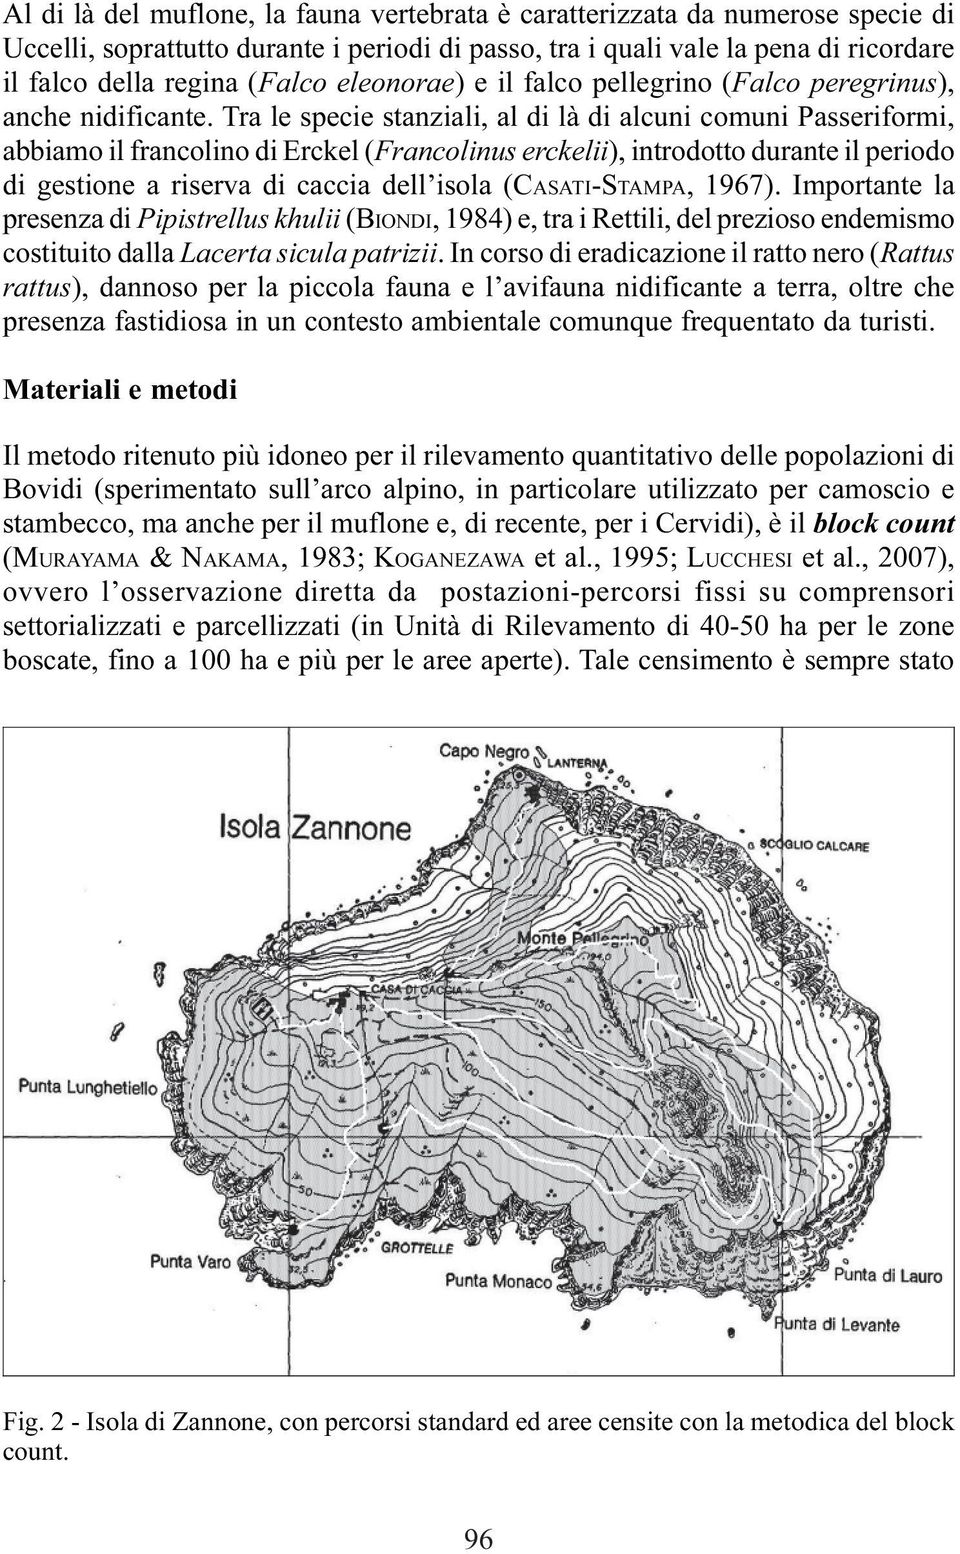 Tra le specie stanziali, al di là di alcuni comuni Passeriformi, abbiamo il francolino di Erckel (Francolinus erckelii), introdotto durante il periodo di gestione a riserva di caccia dell isola